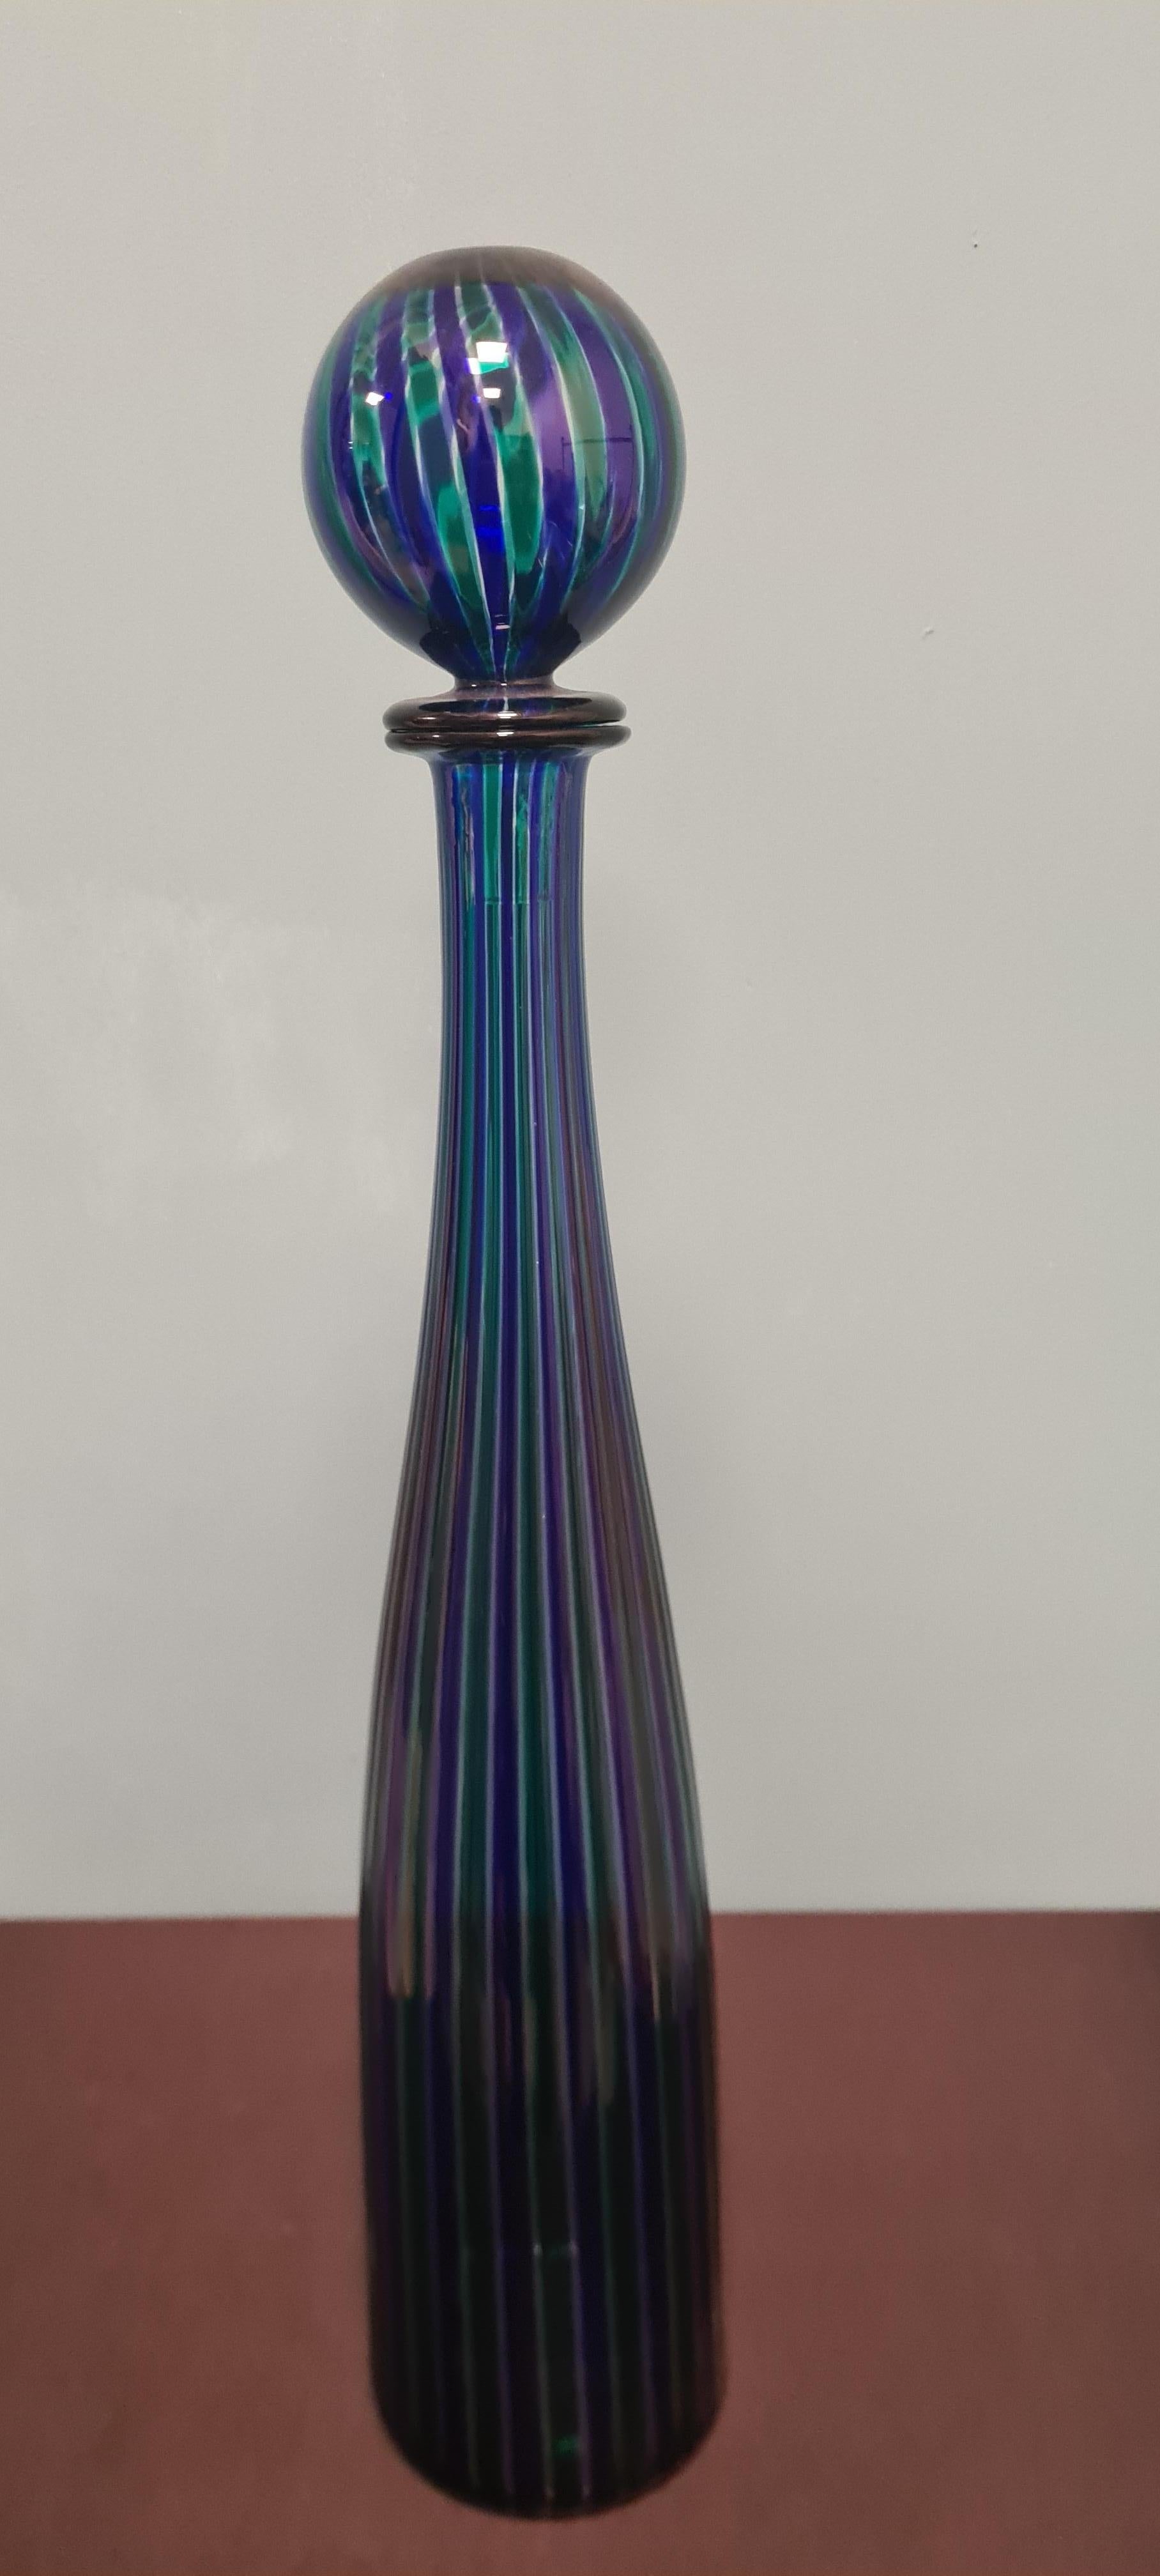 La série de bouteilles Morandiane de Venini est inspirée des tableaux du peintre Giorgio Morandi qui a fait des bouteilles l'image distinctive de ses œuvres.

La série Bottiglie Morandiane a été conçue en 1956 par Paolo Venini, avec l'aide du grand